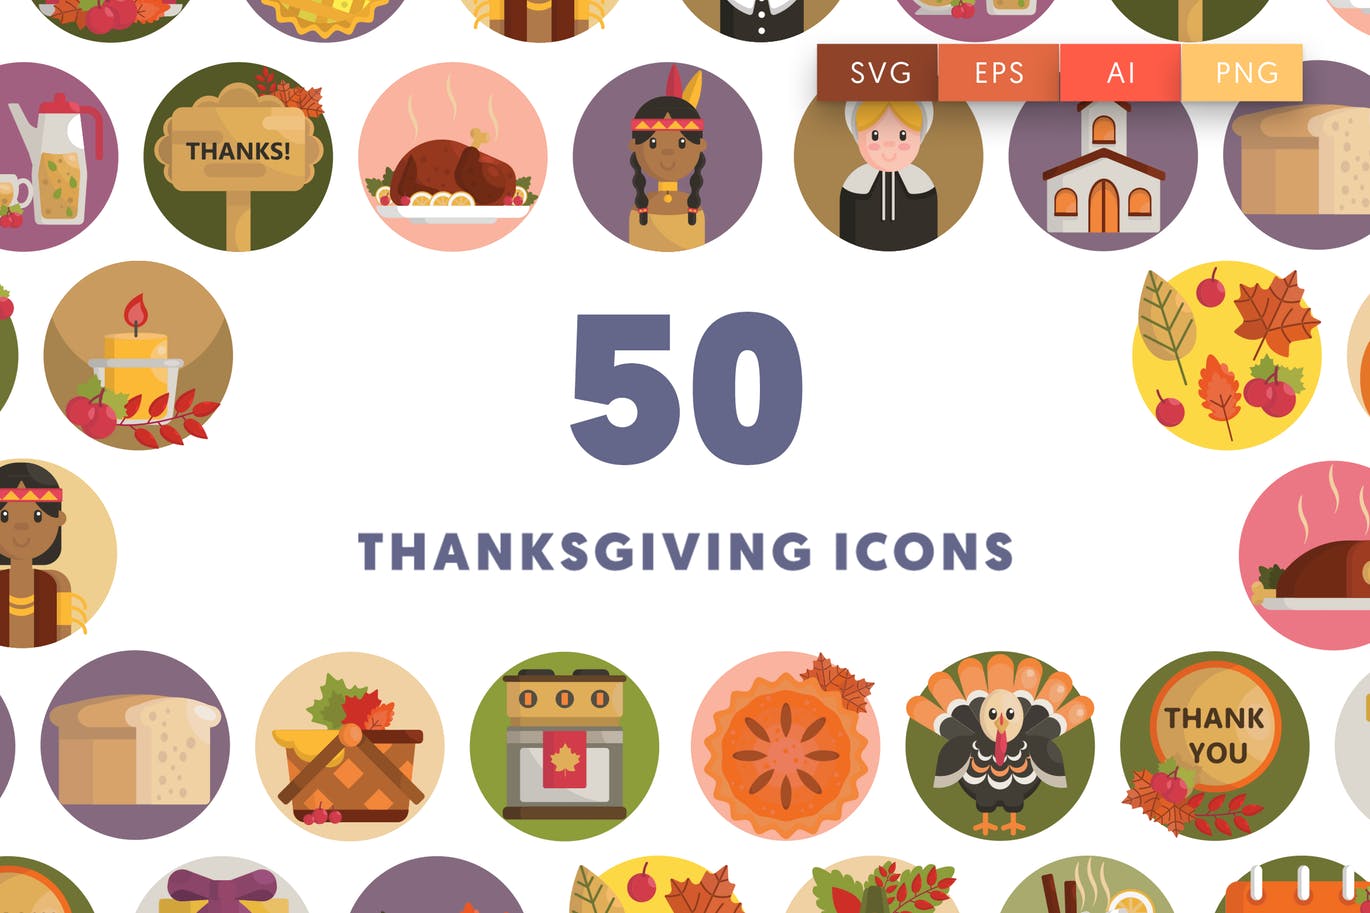 50枚感恩节主题矢量图标素材 50 Thanksgiving Icons插图